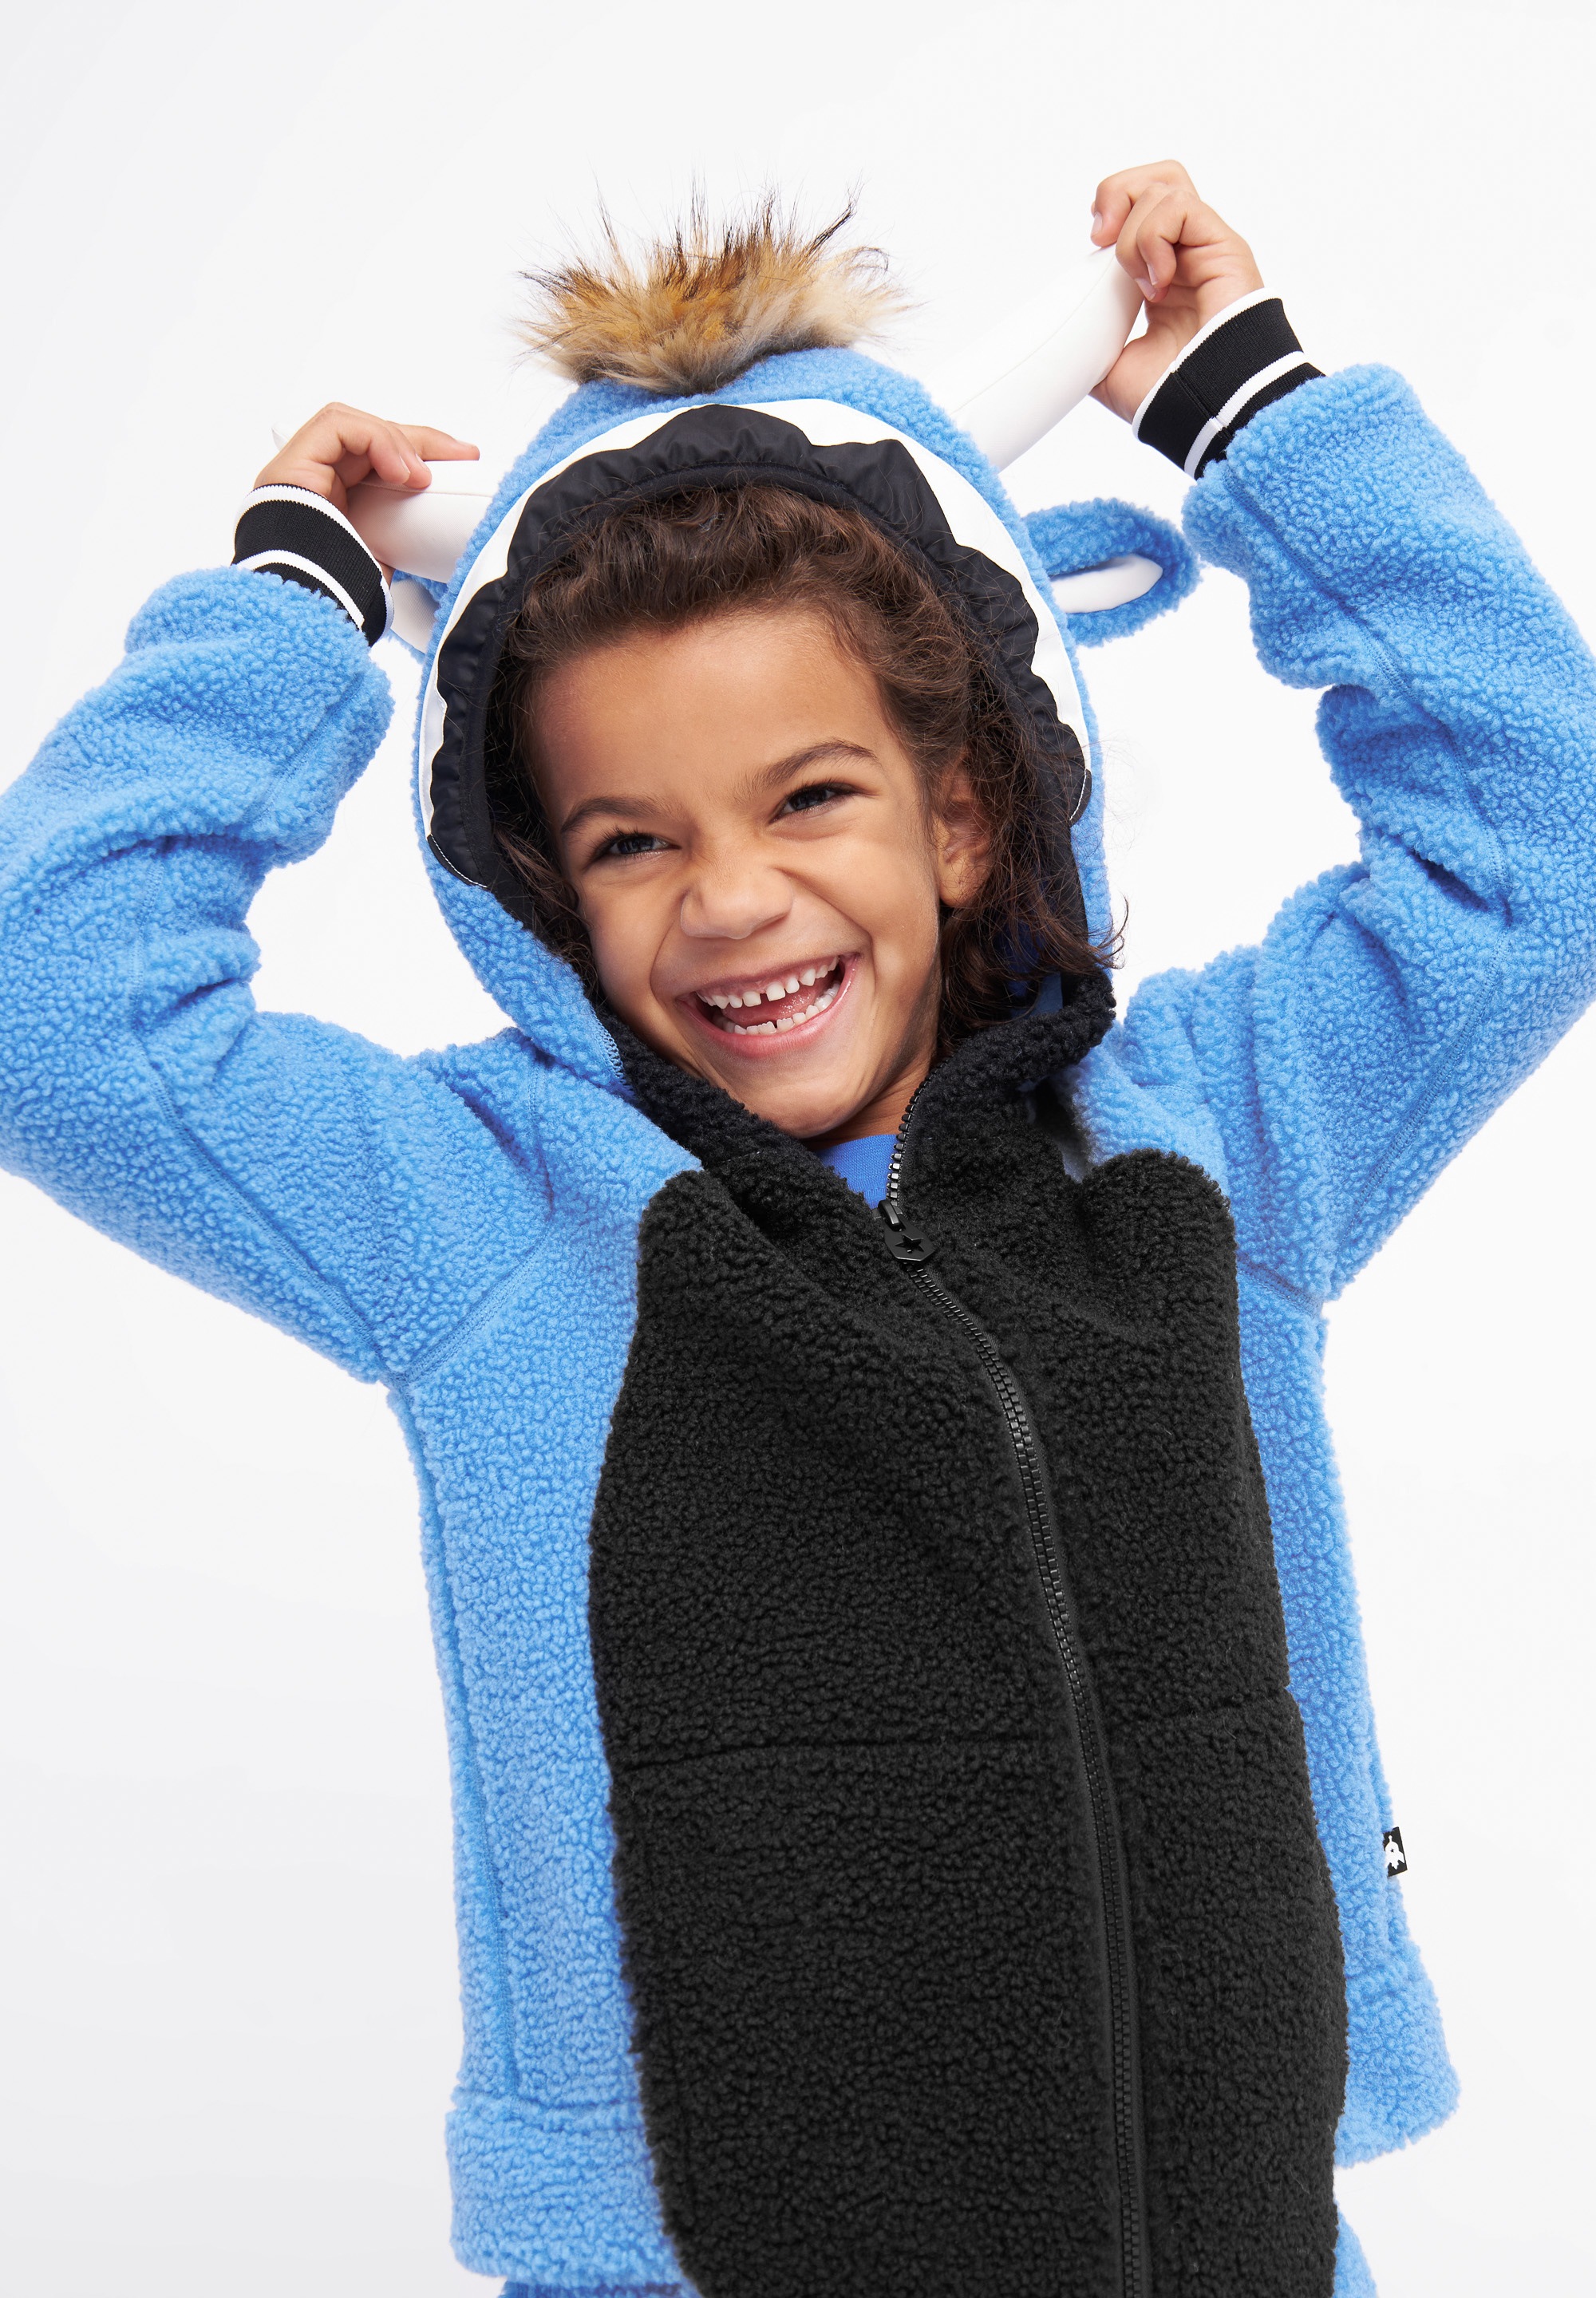 WeeDo Jumpsuit »WILD THING Fleece Funwear«, Funwear für Kids, limitiert + nachhaltig